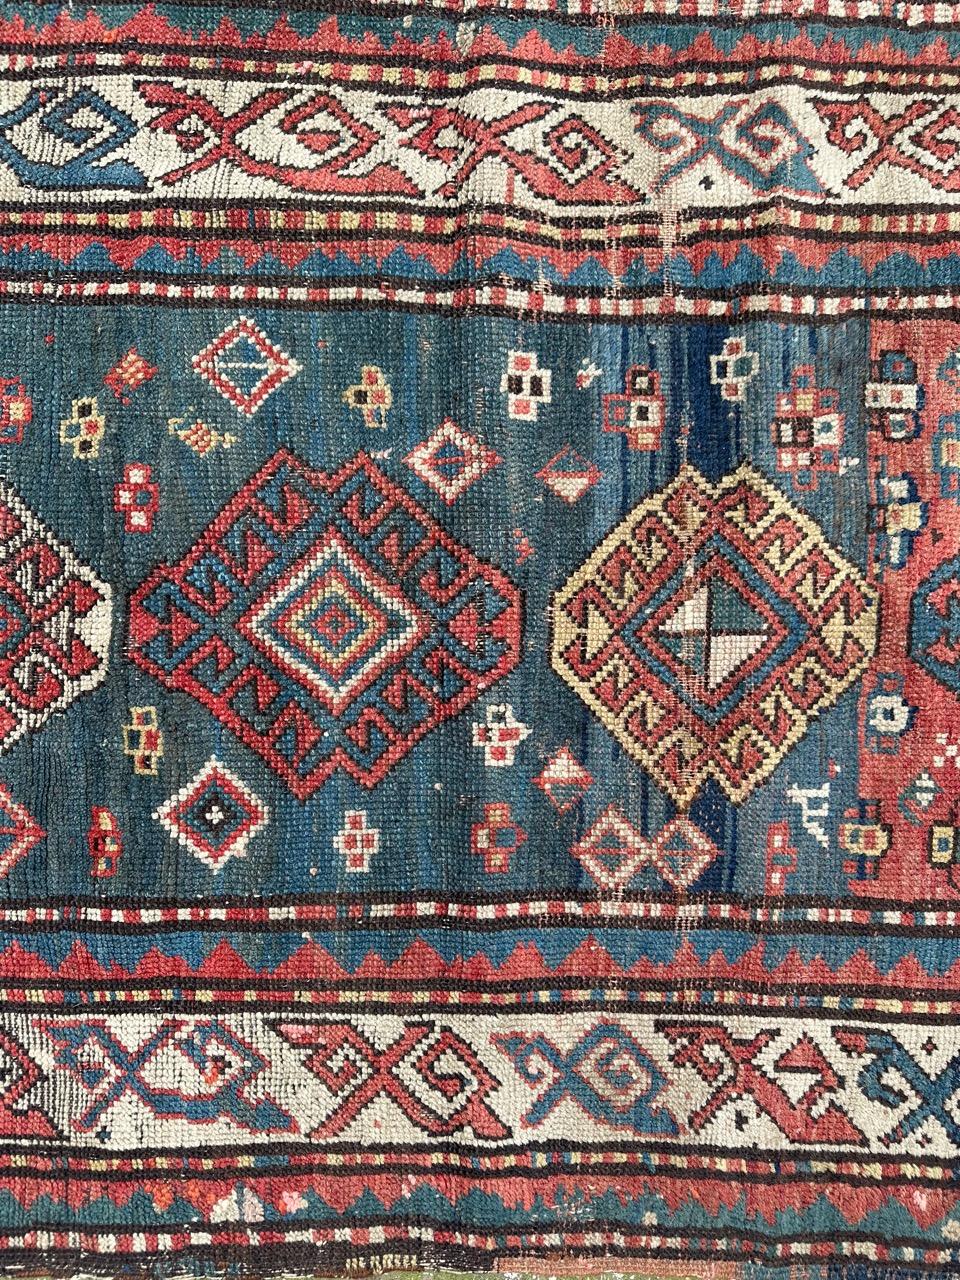 Hübscher kaukasischer Kazak-Teppich aus dem späten 19. Jahrhundert mit schönem geometrischem und Tribal-Muster und schönen Naturfarben in Rot, Grün, Gelb und Blau, komplett handgeknüpft mit Wolle auf Wollfond, einige Verluste und